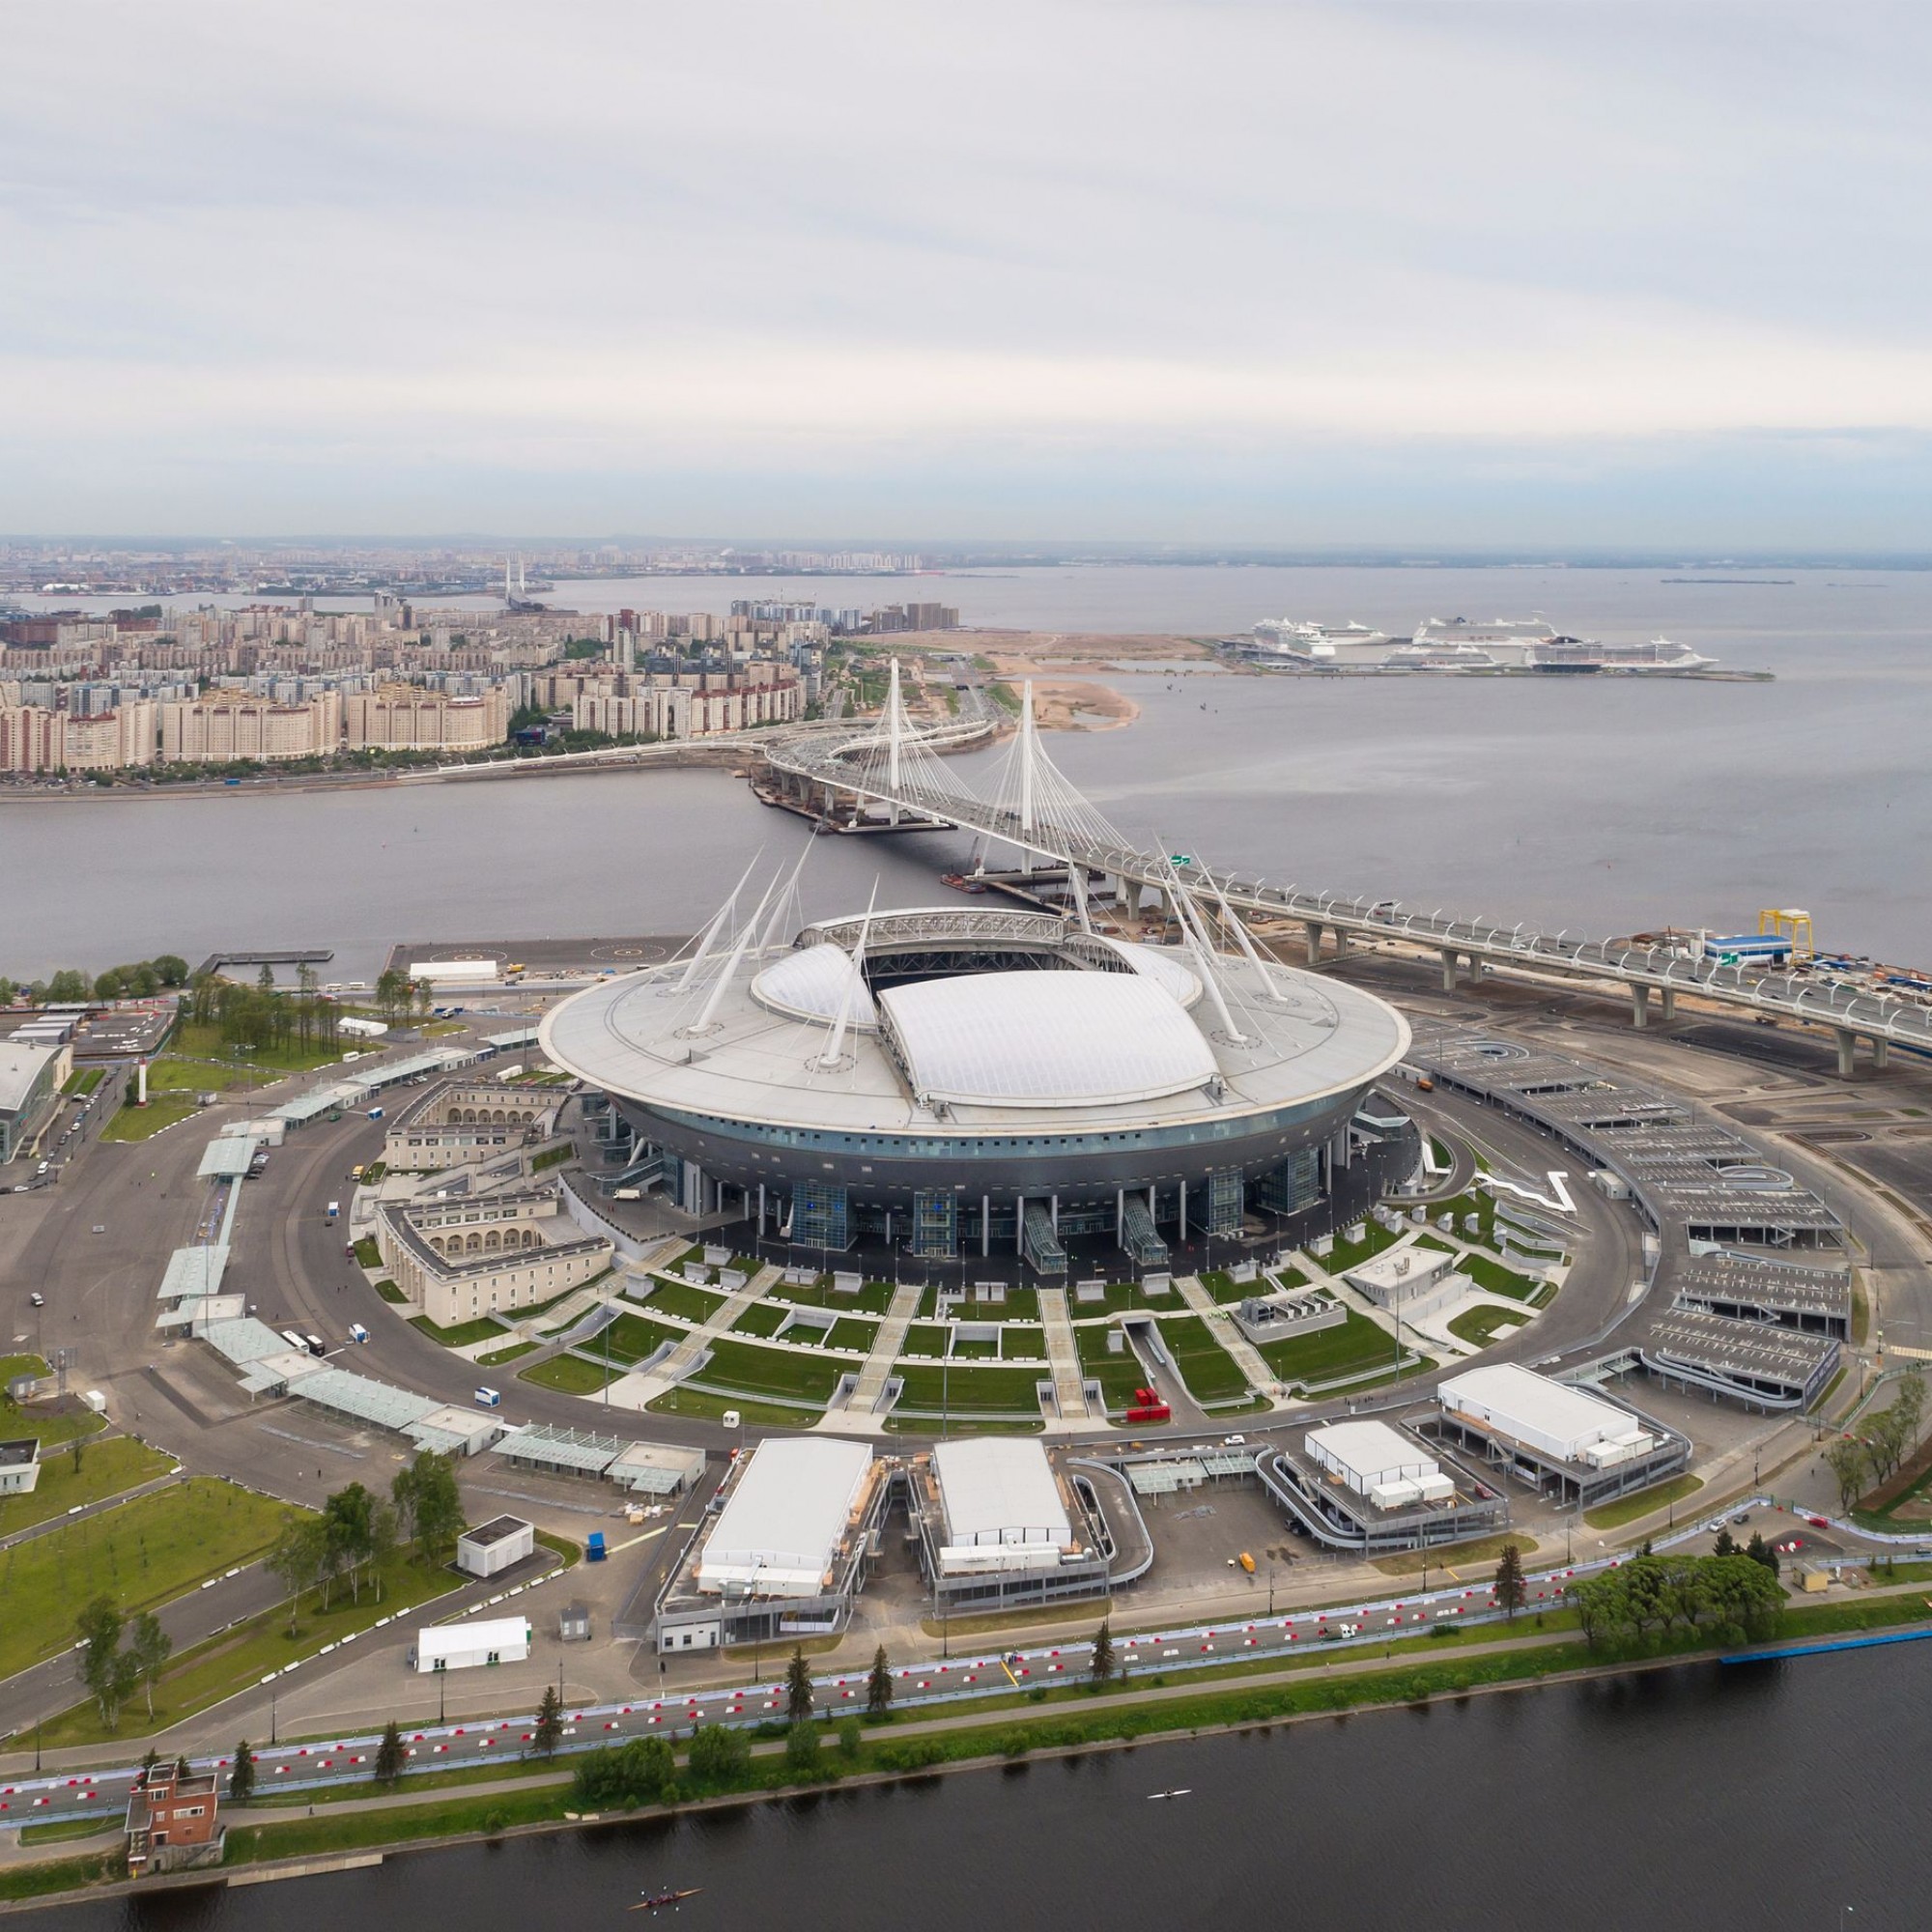 Eine weitere Luftaufnahme des Krestovsky-Stadions in Sankt Petersburg.